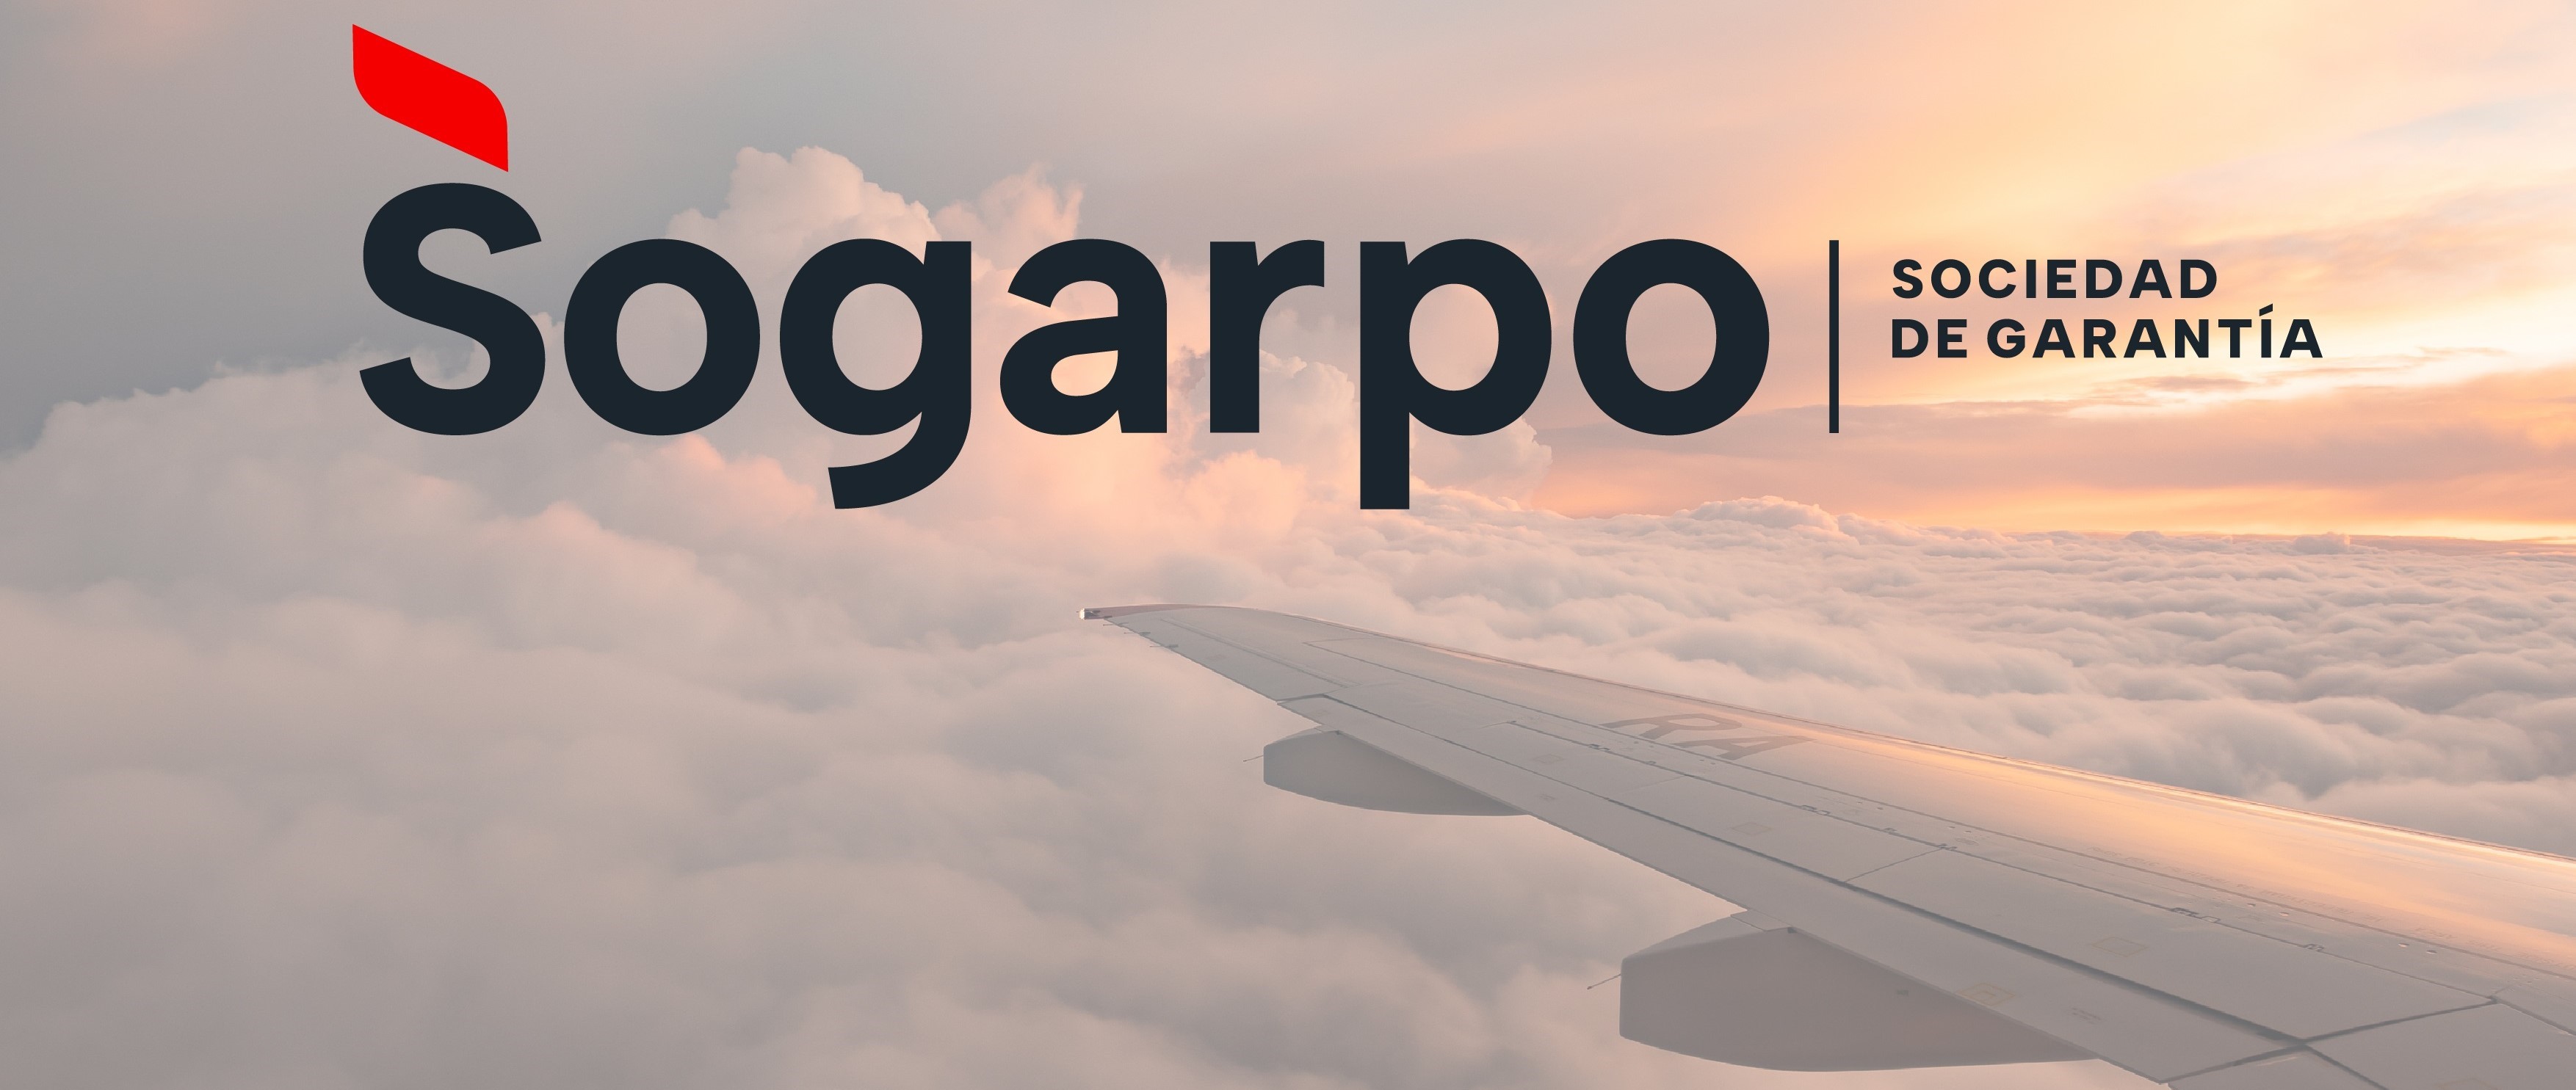 Sogarpo moderniza su imagen corporativa, más cercana, digital y conectada, y activa la campaña “Tu aval, tu futuro”